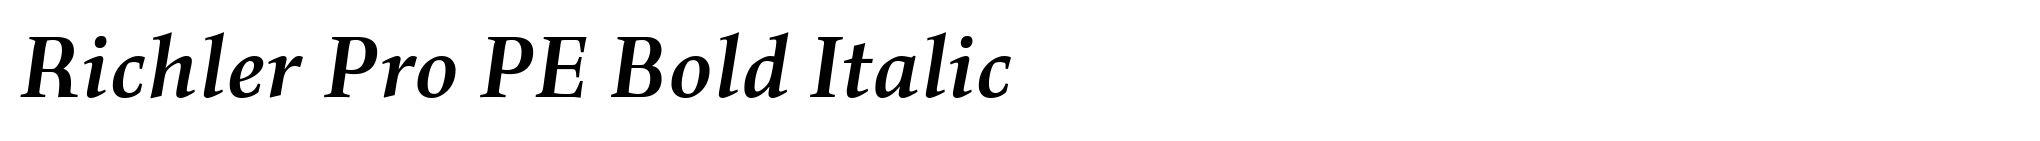 Richler Pro PE Bold Italic image